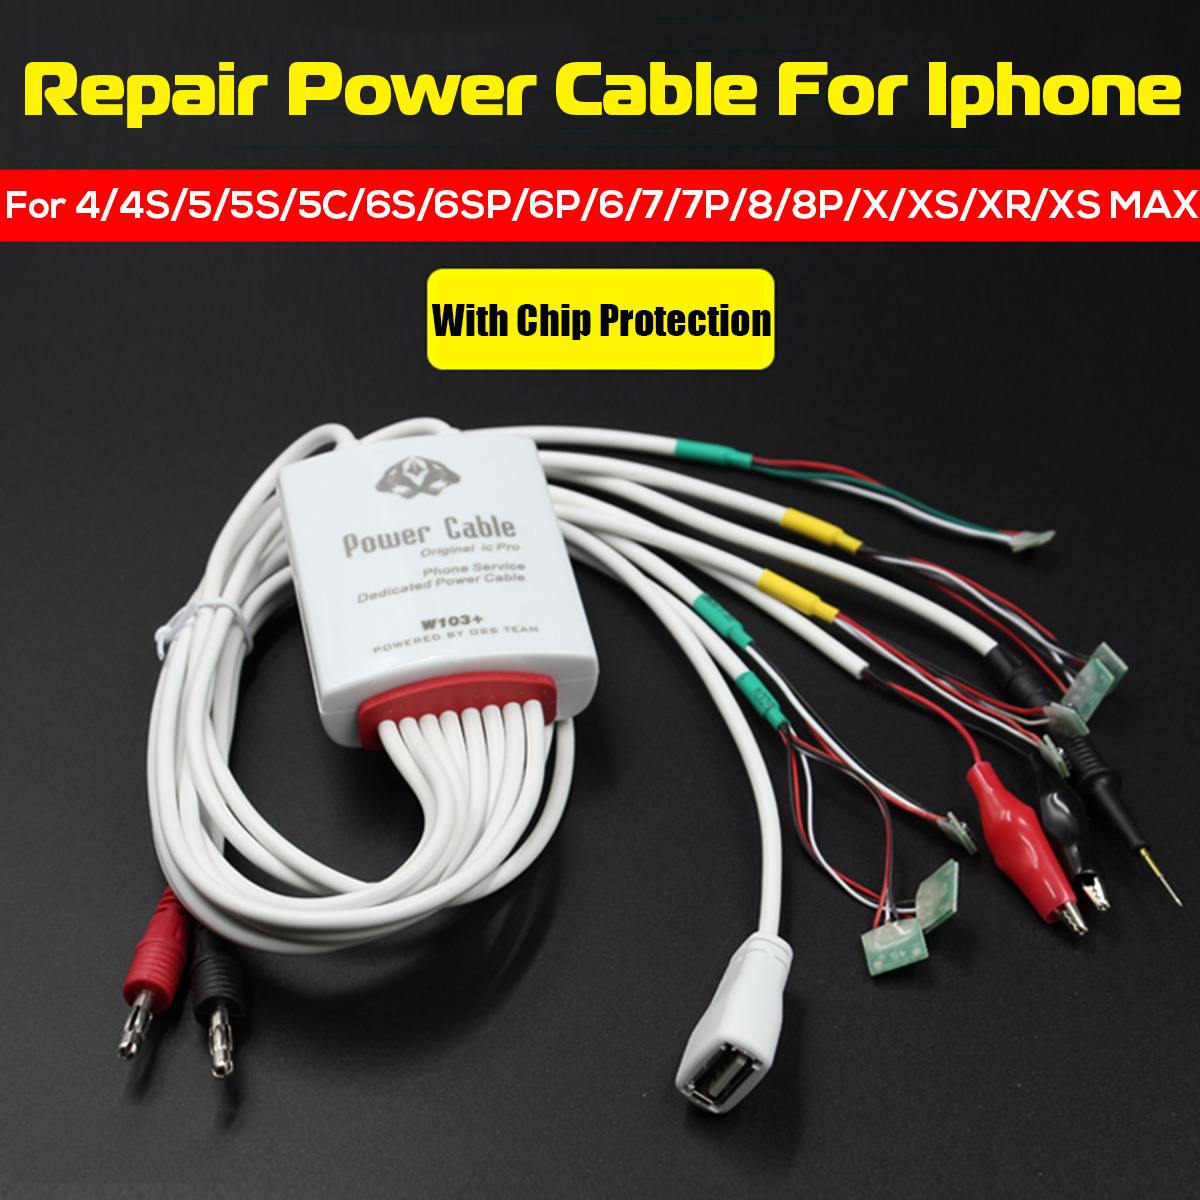 DC Telefoon Reparatie Power Kabel Multifunctionele Test Kabel voor iphone 4/4 S/5/5 S /5C/6 S/6SP/6 P/6/7/7 P/8/ 8 P/X Reparatie Tools